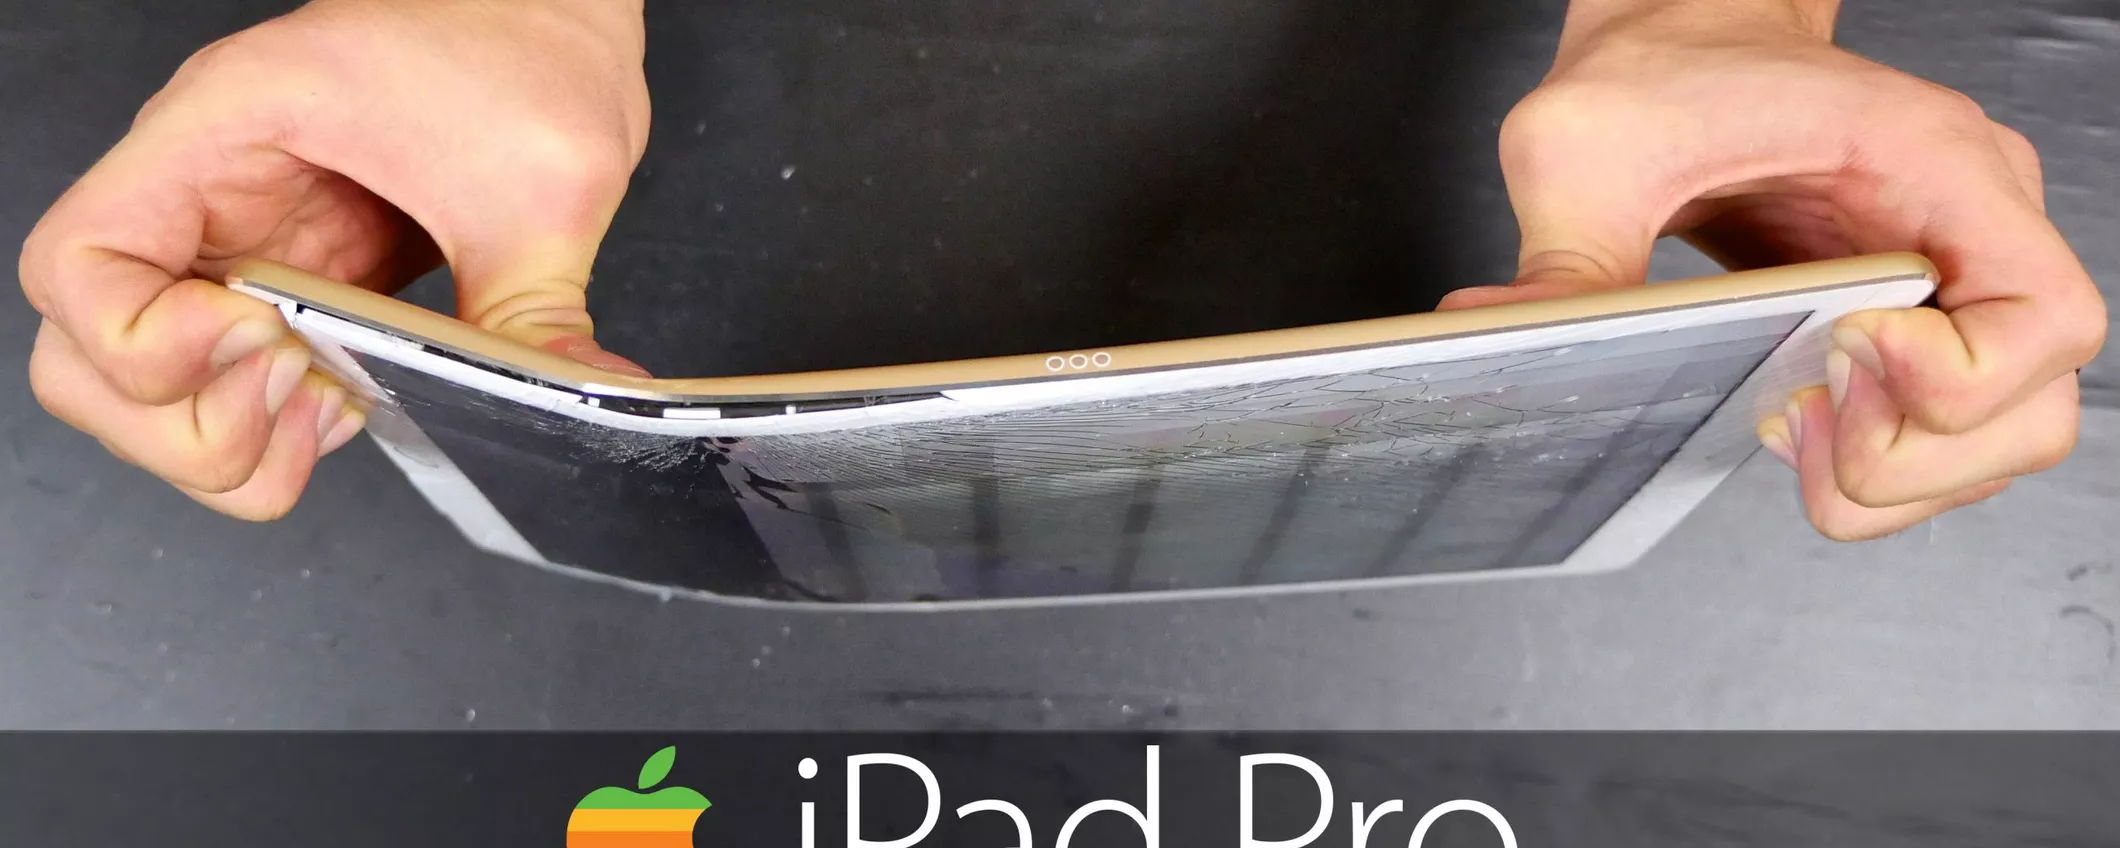 iPad Pro, distrutto in un video (ed è più resistente del previsto)